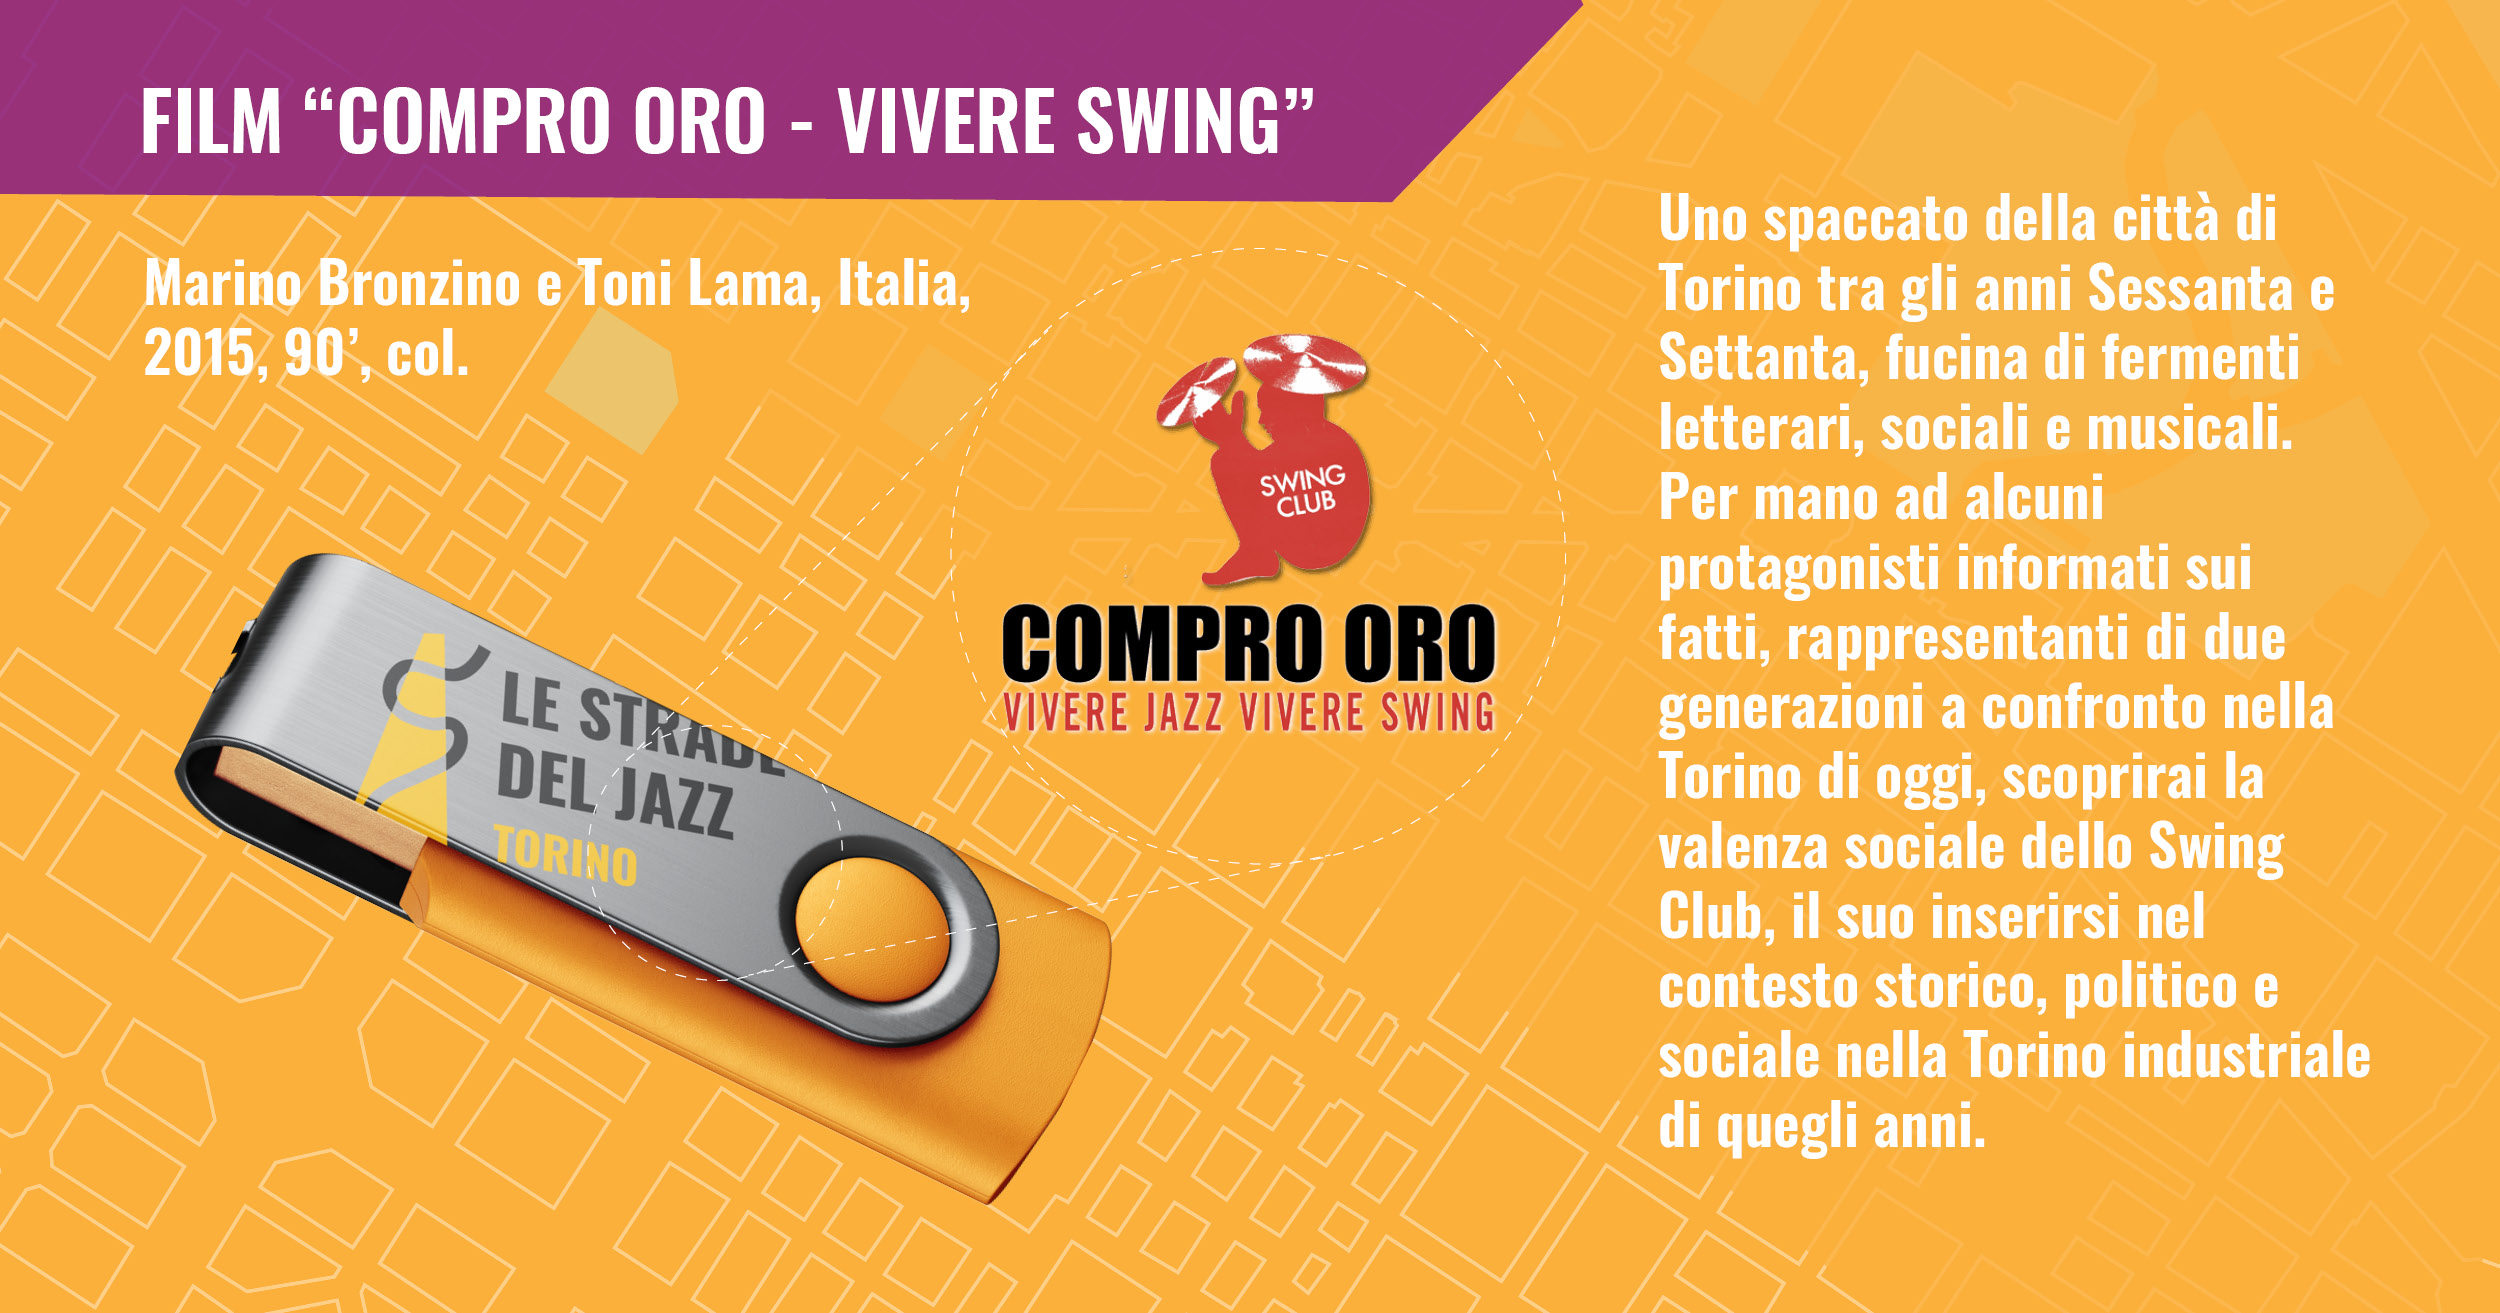 Film "Compro oro - Vivere Jazz"